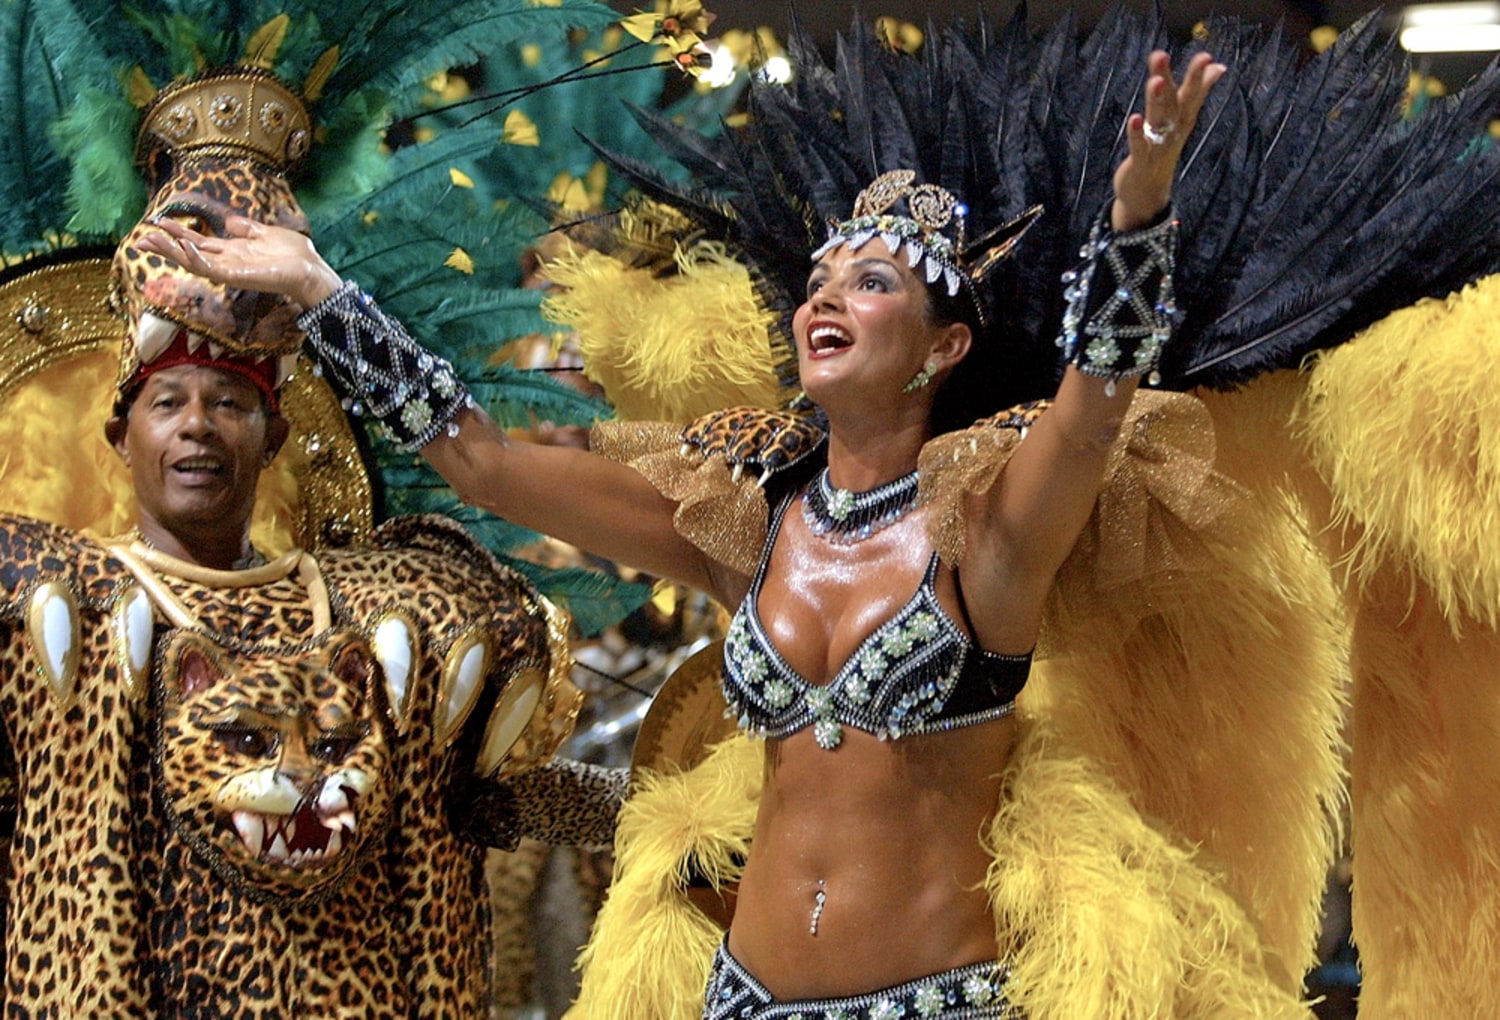 Rio de Janeiro Costume Experience Carnival Parade & Transfer